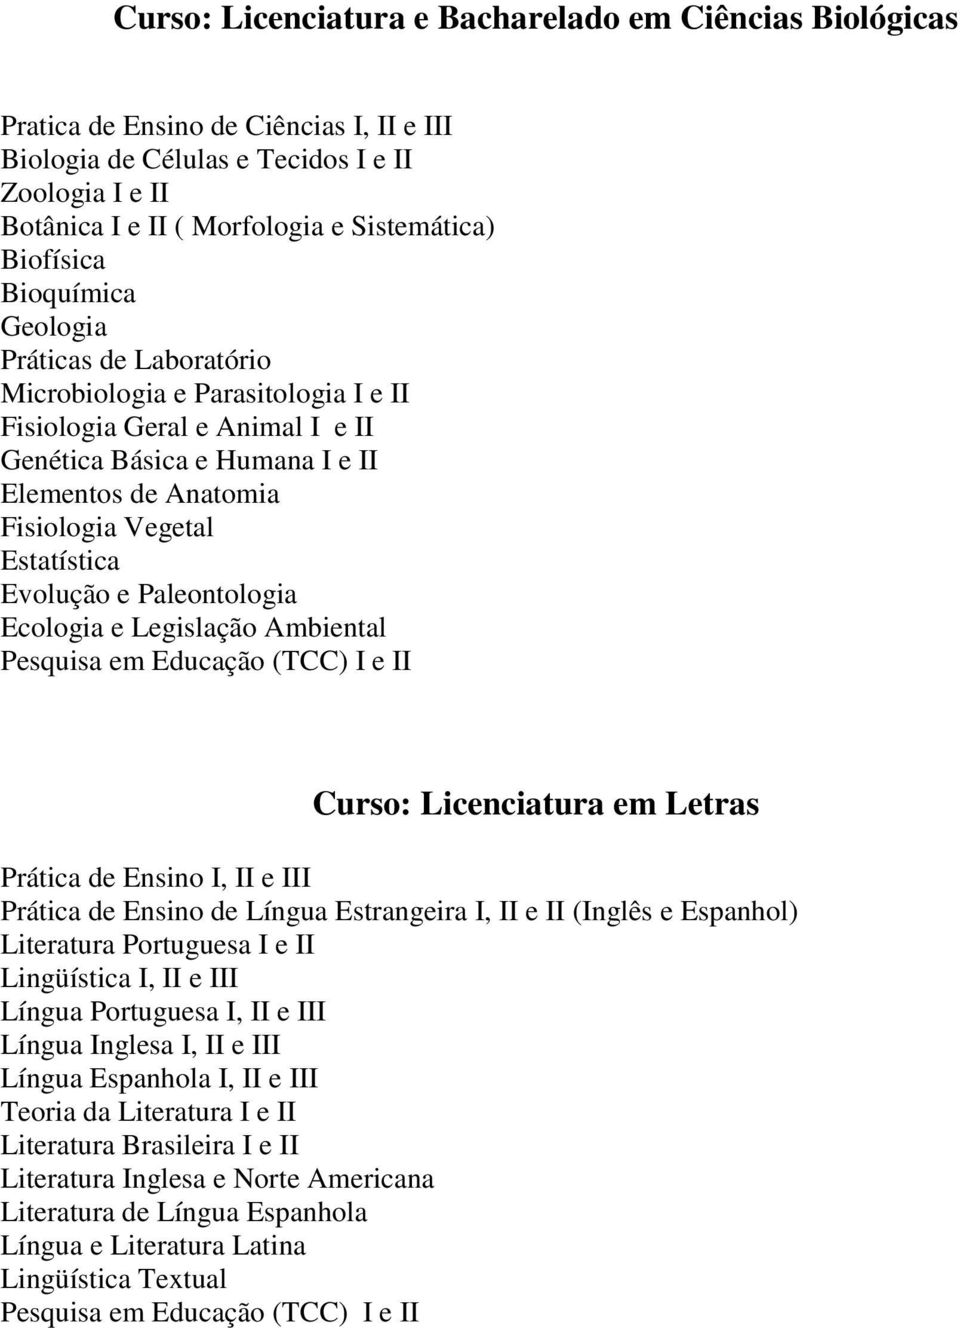 Estatística Evolução e Paleontologia Ecologia e Legislação Ambiental Pesquisa em Educação (TCC) I e II Curso: Licenciatura em Letras Prática de Ensino I, II e III Prática de Ensino de Língua